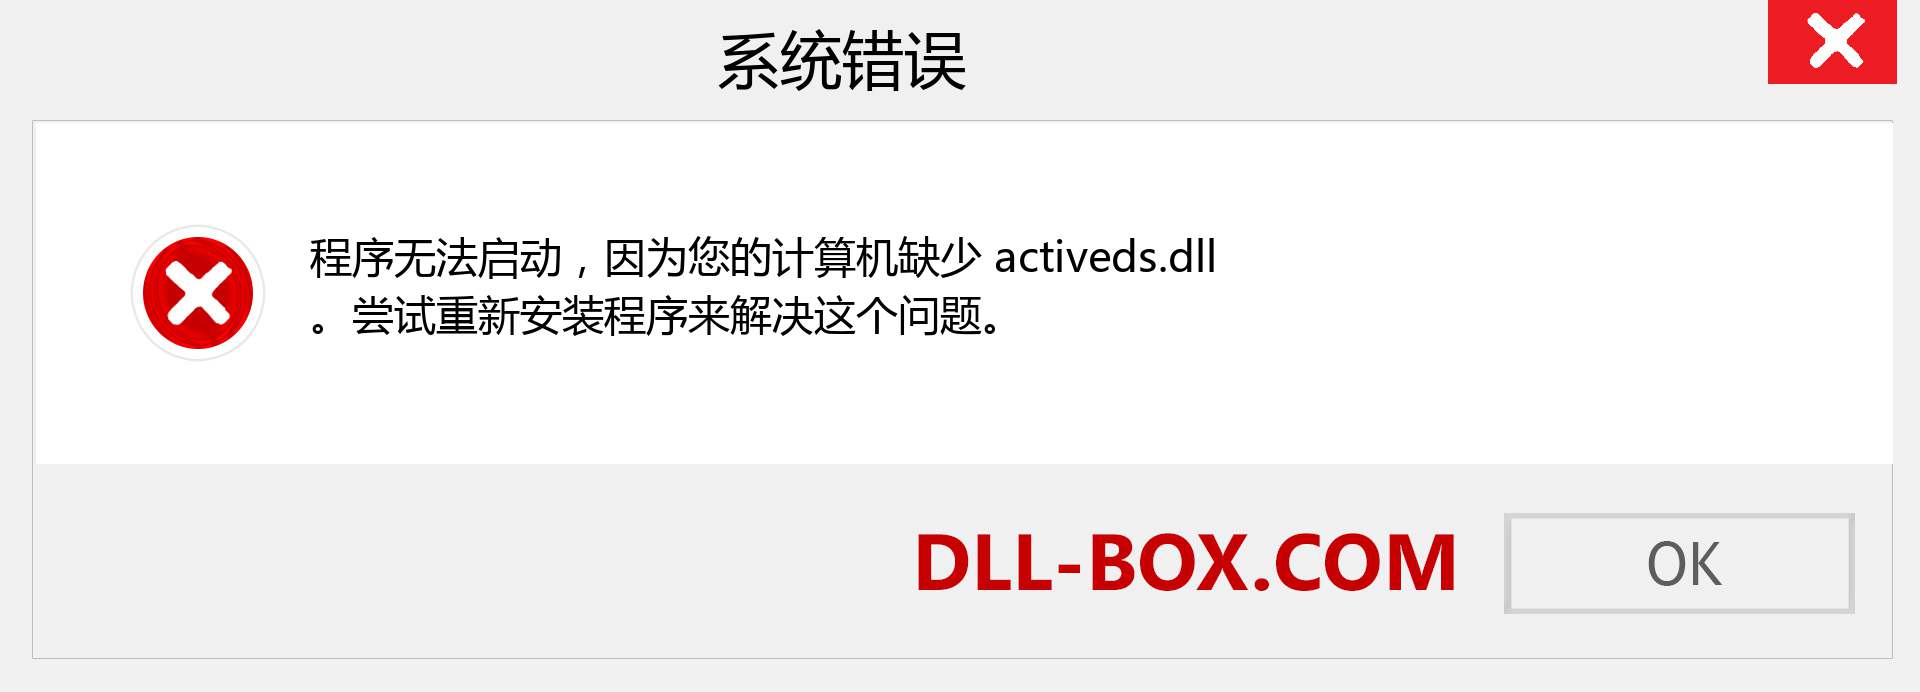 activeds.dll 文件丢失？。 适用于 Windows 7、8、10 的下载 - 修复 Windows、照片、图像上的 activeds dll 丢失错误